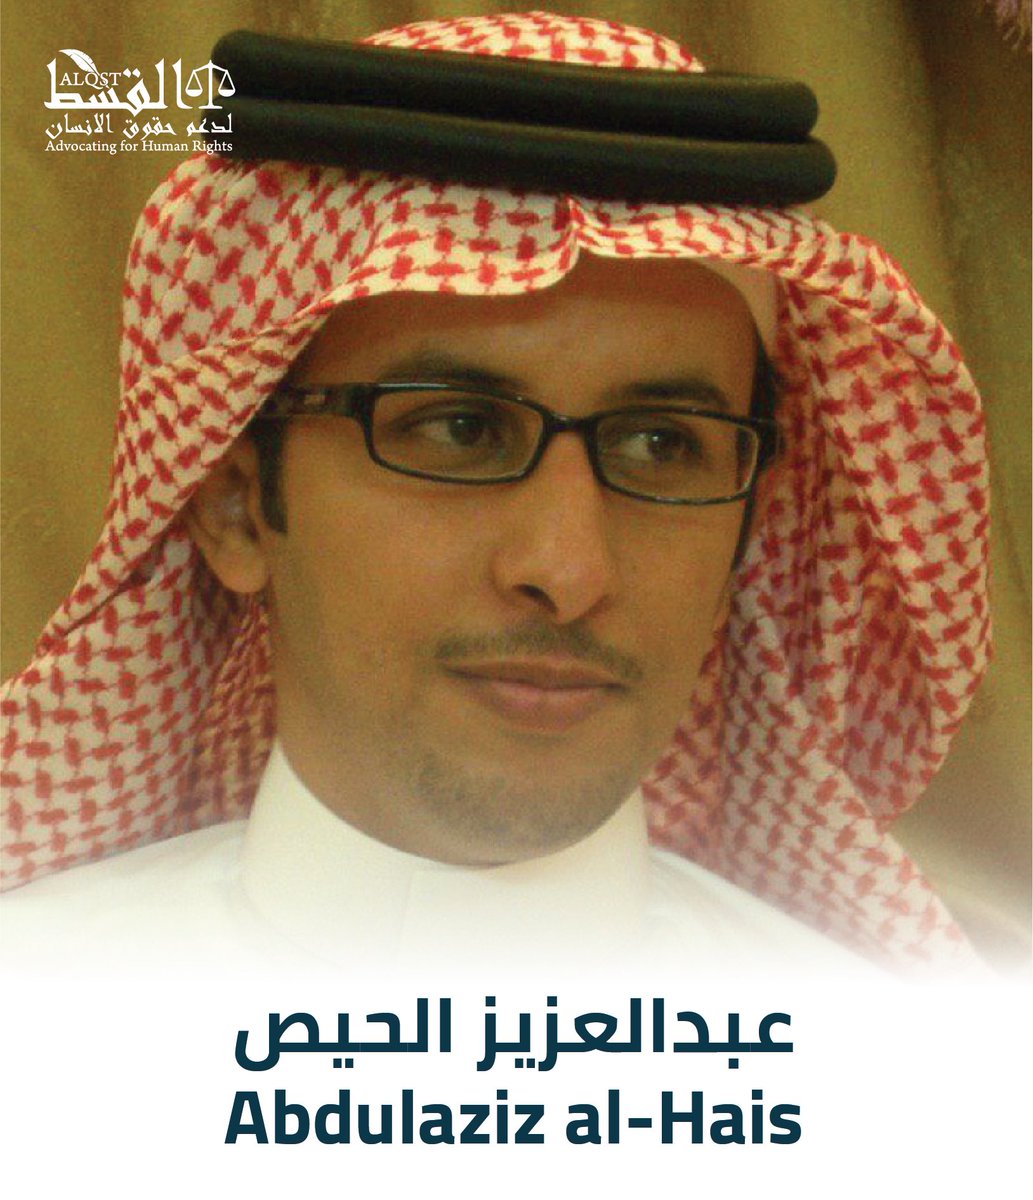 وبعد ذلك بيومين، في يوم الاثنين الموافق 18 نوفمبر داهمت السلطات منزل الكاتب عبدالعزيز الحيص في مدينة حايل واعتقلته وصادرت أجهزته